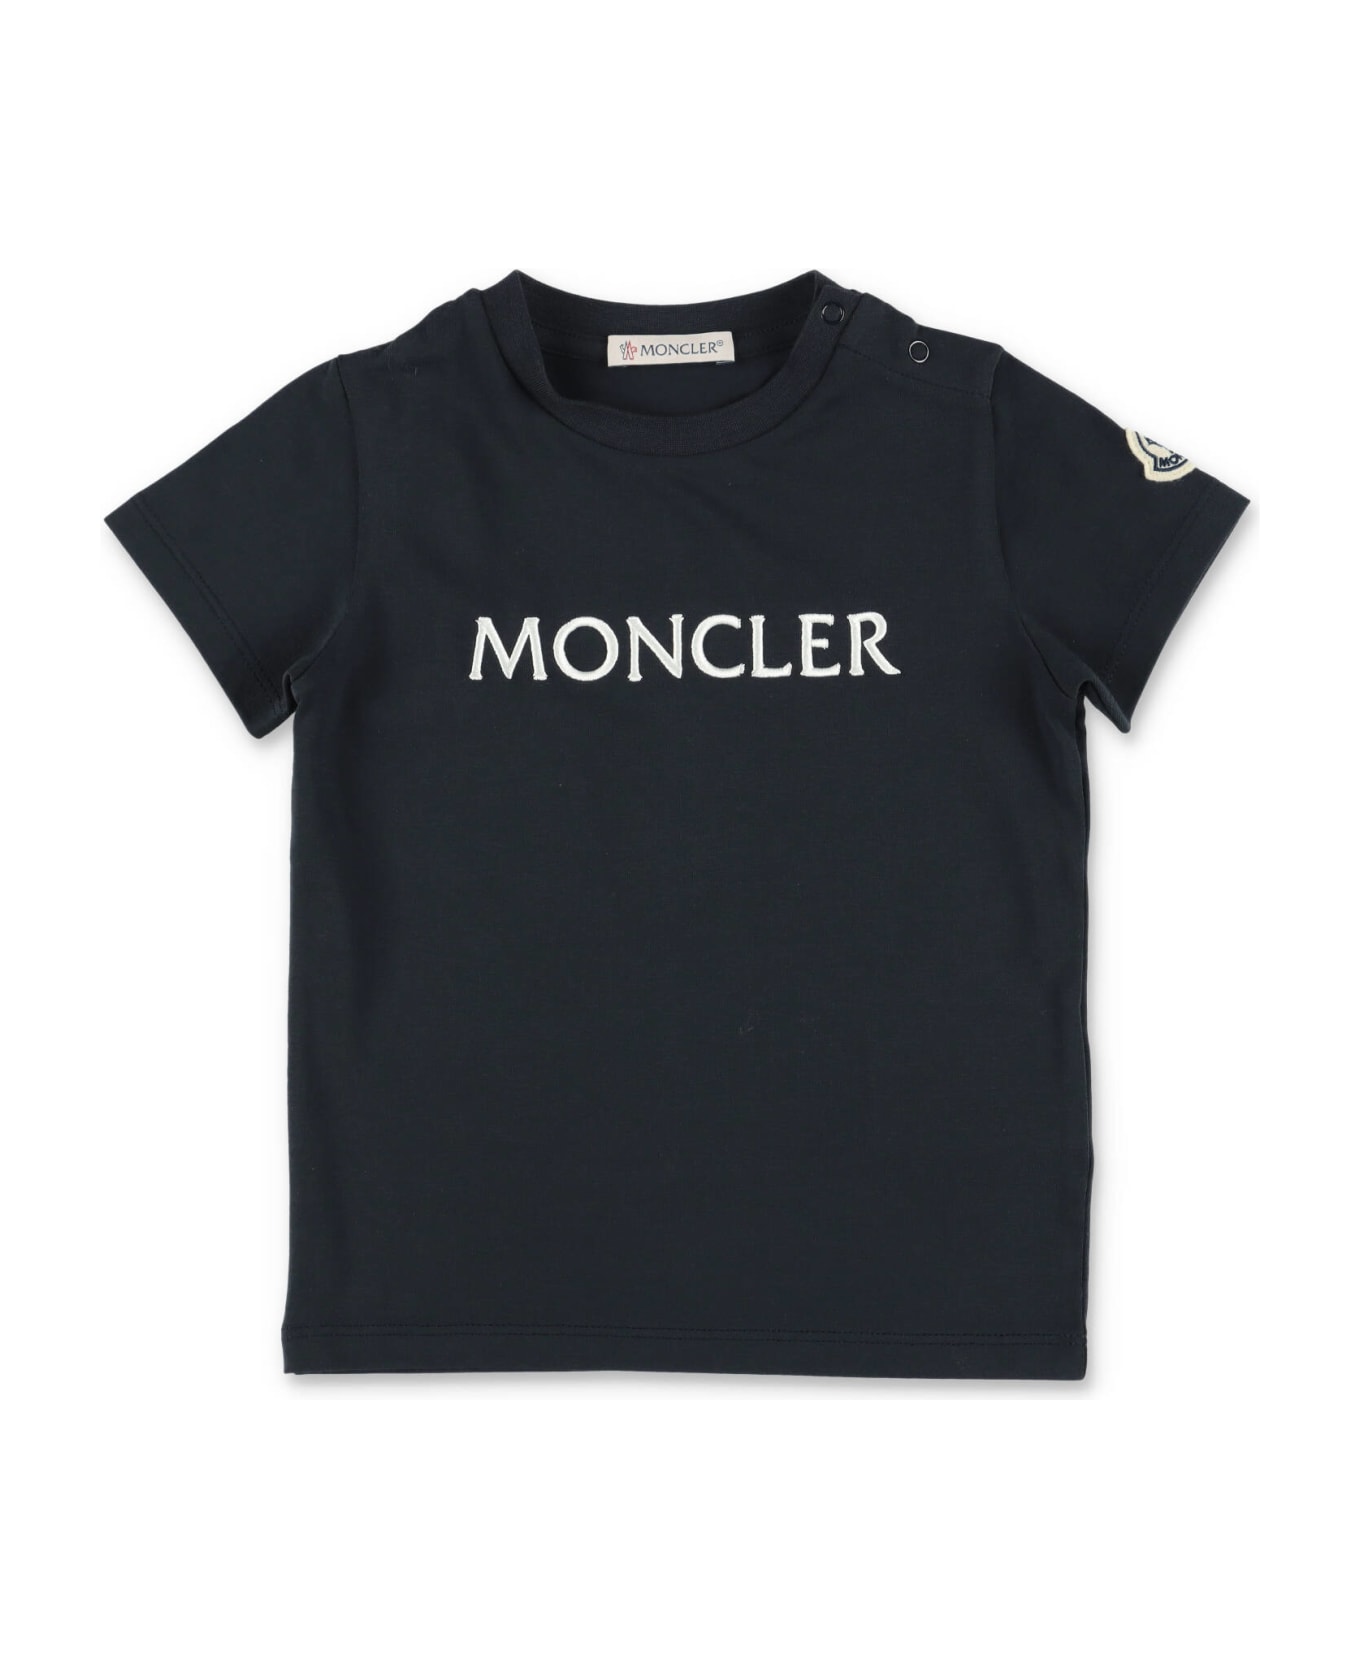 Moncler T-shirt Blu Navy In Jersey Di Cotone Baby Boy - Blu